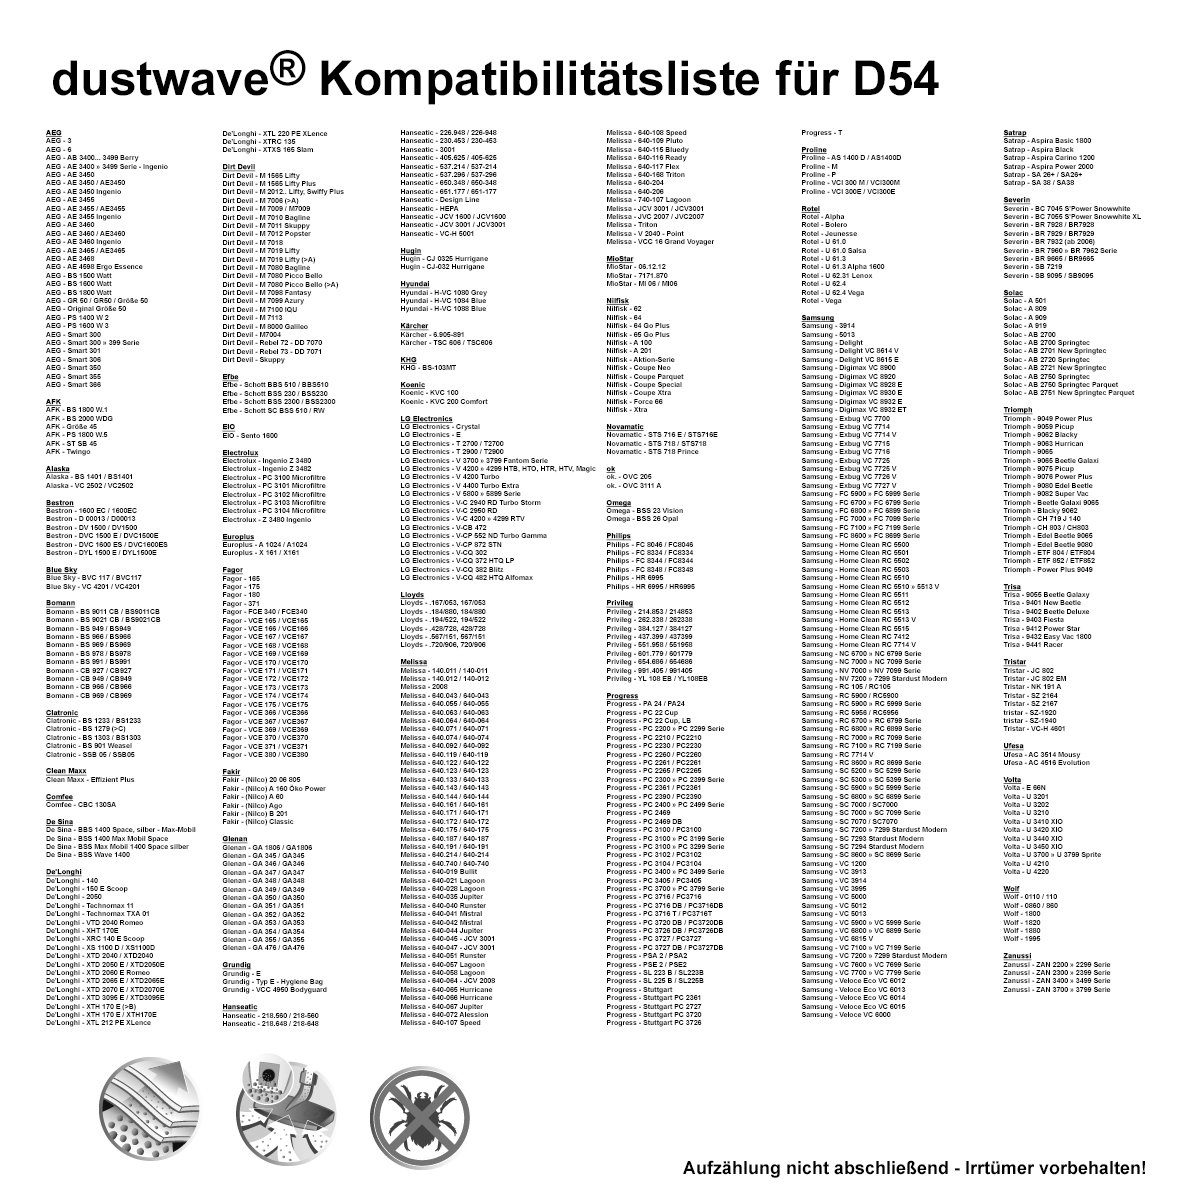 Dustwave 1 Test-Set, für 1 700, + Staubsaugerbeutel Comfee passend zuschneidbar) CVCB 1 Hepa-Filter 15x15cm - Test-Set, (ca. St., Staubsaugerbeutel